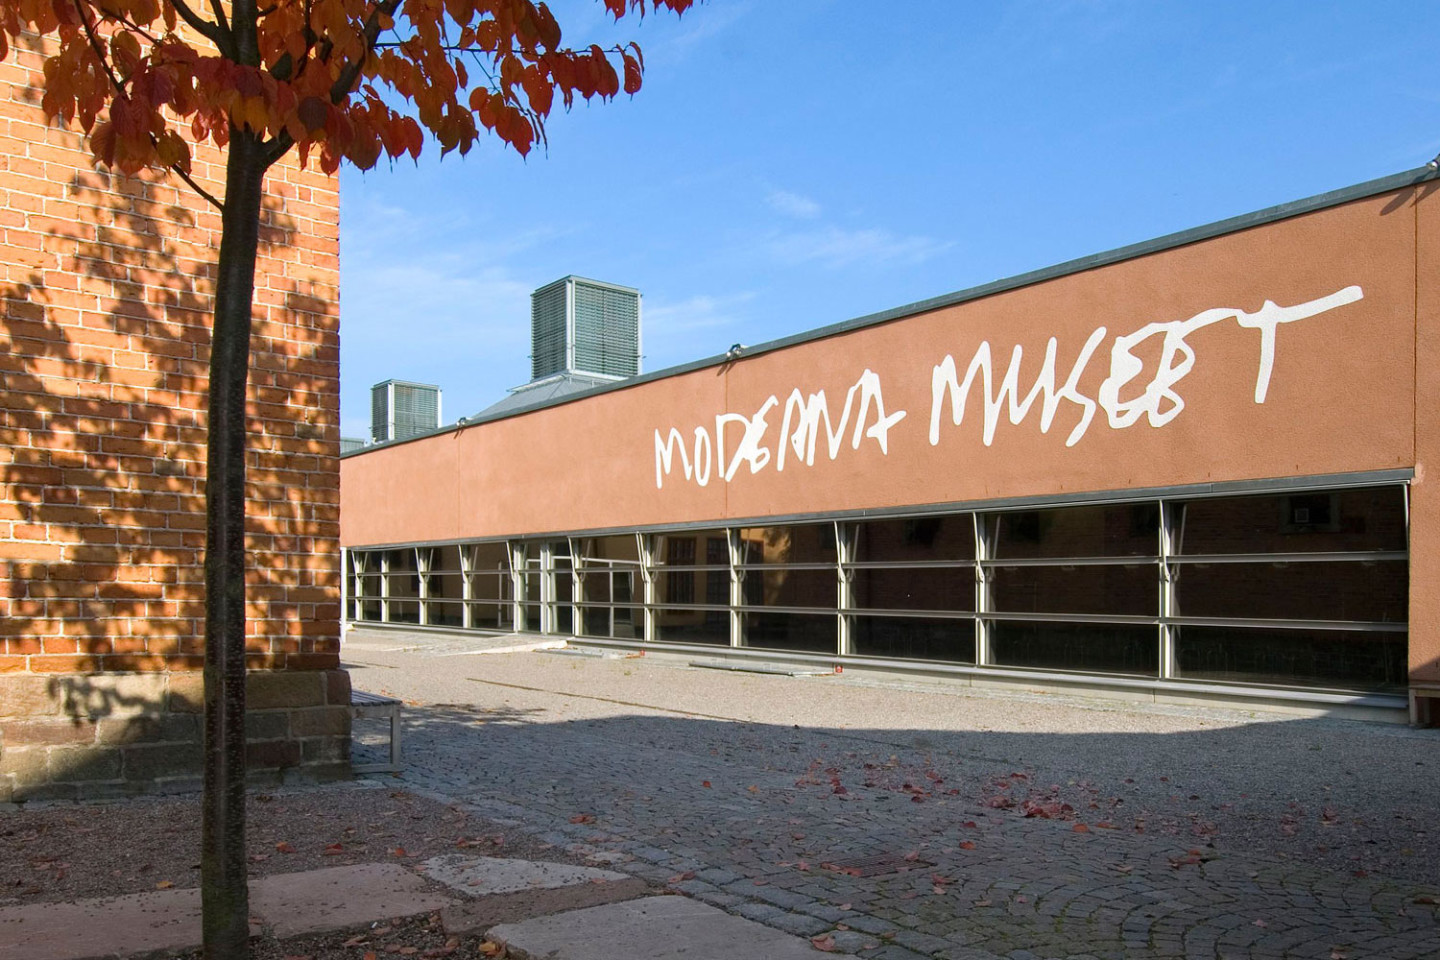 Moderna Museet exteriör, fasad med logga.